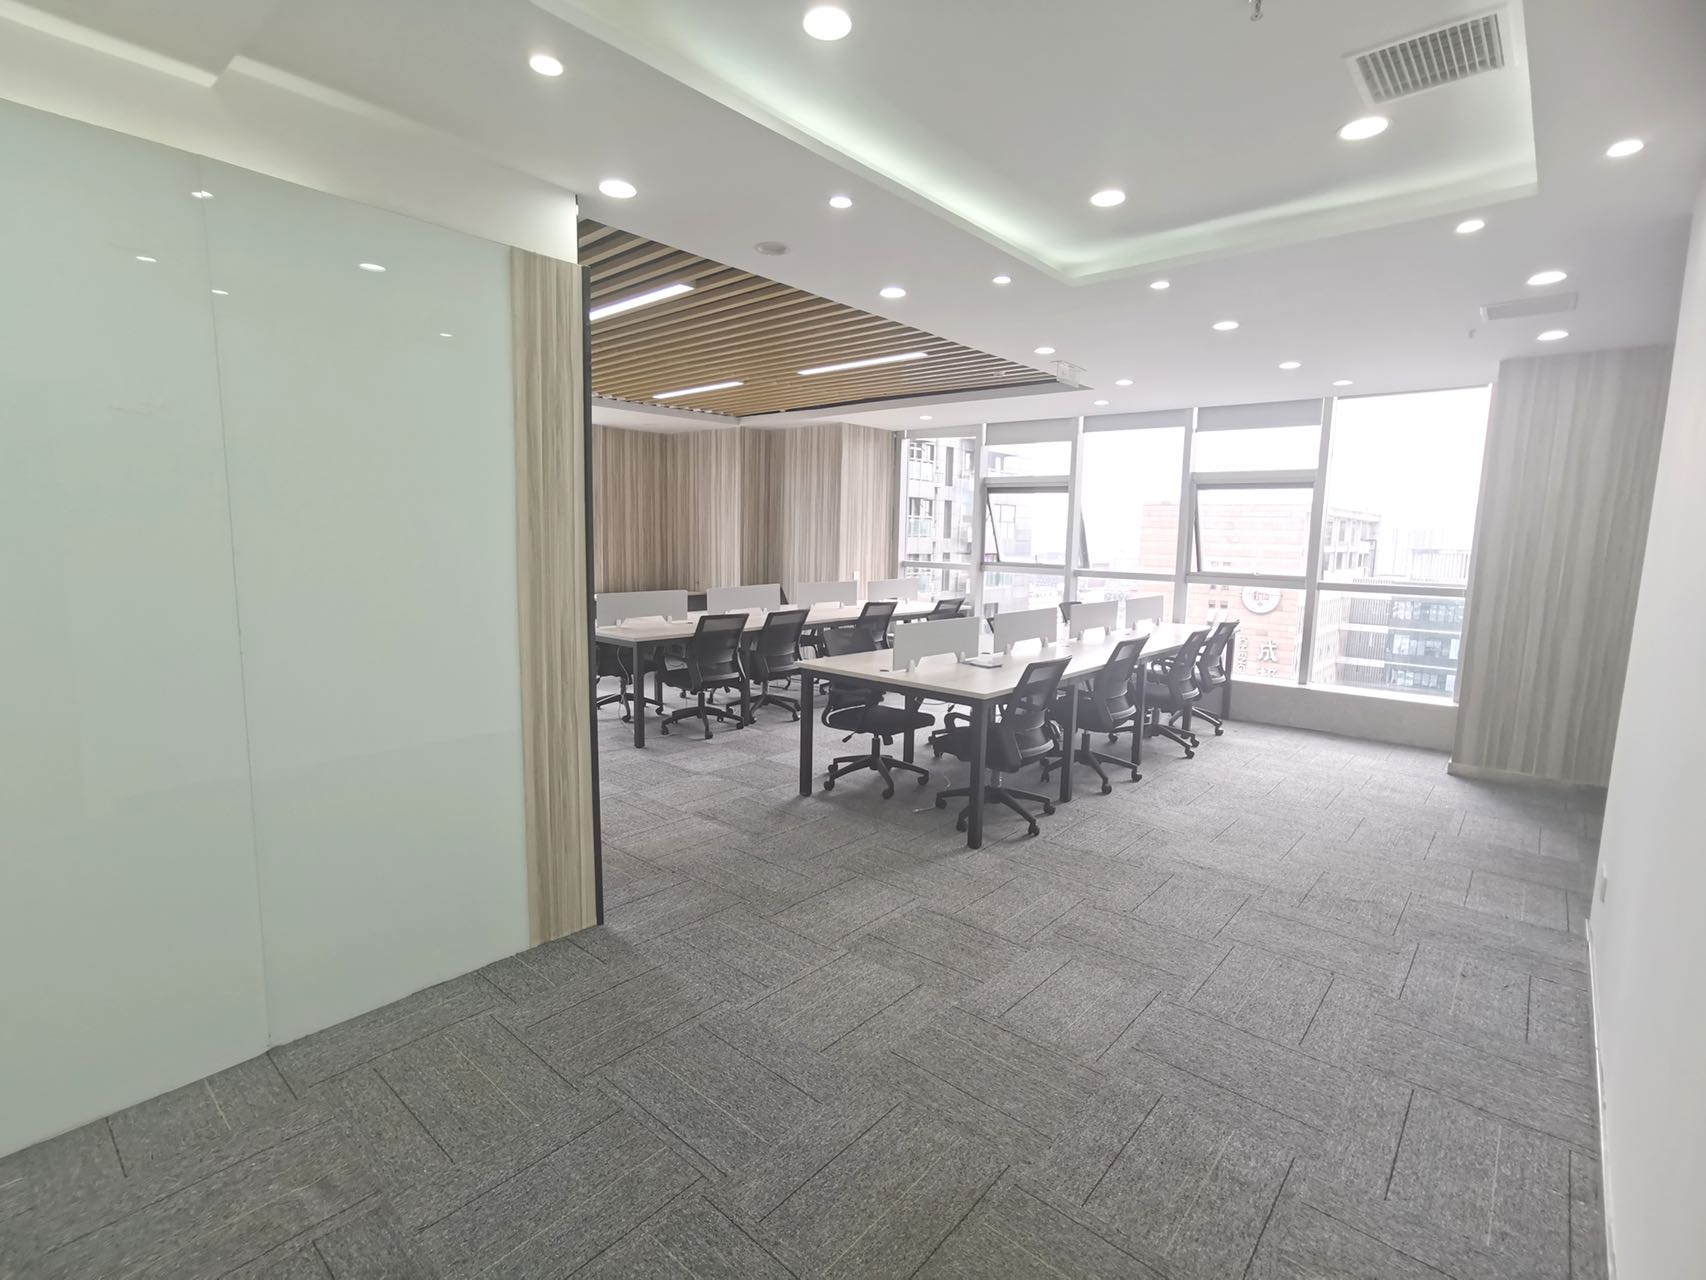 錦江區紅星國際188平精裝辦公室帶家具 戶型方正 采光通透 電梯口戶型